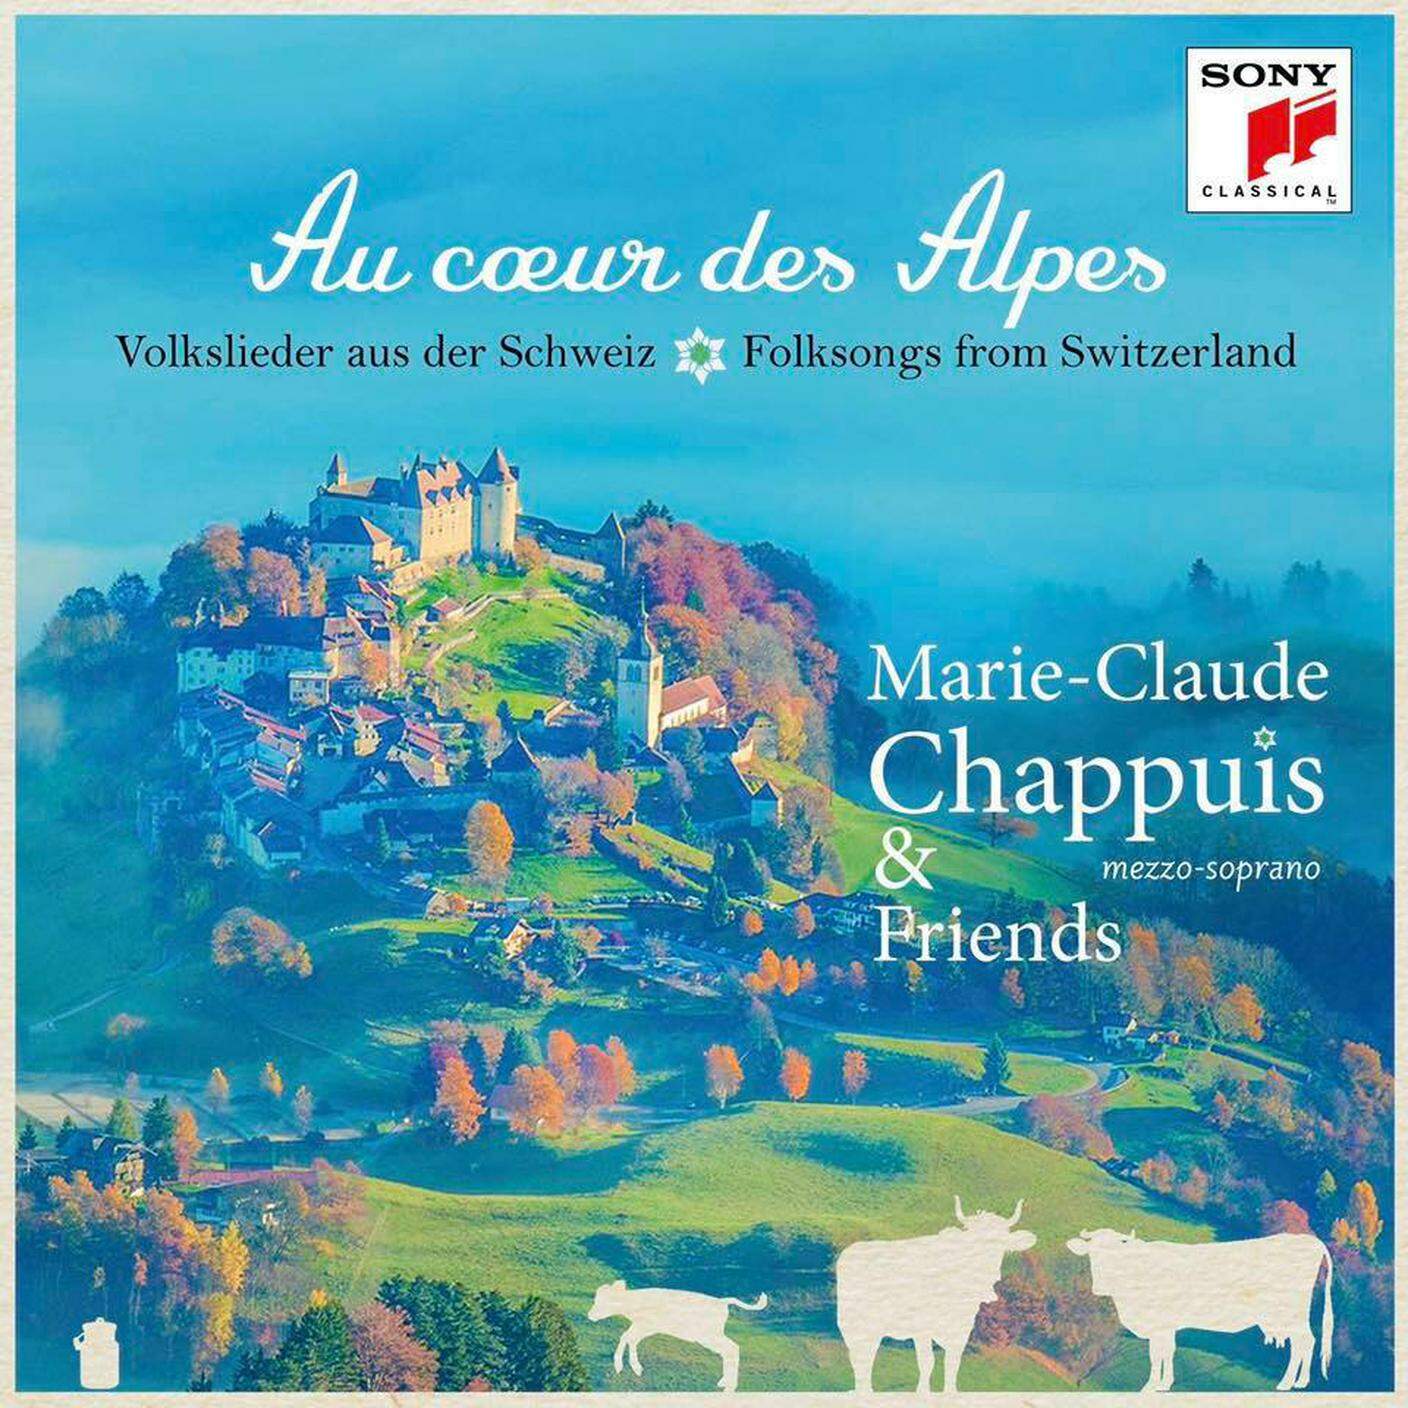 Marie-Claude Chappuis, "Au coeur des Alpes", Sony (dettaglio Copertina)